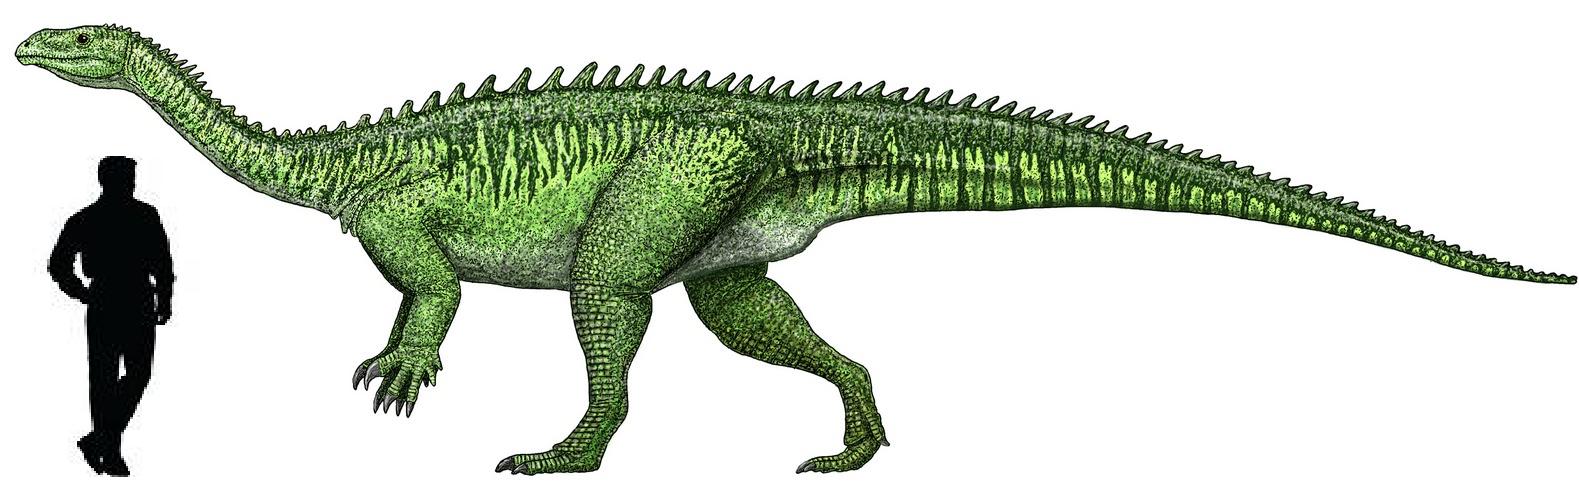 Categoría:Dinosaurios del Triásico | Wiki ACAM | FANDOM powered by Wikia